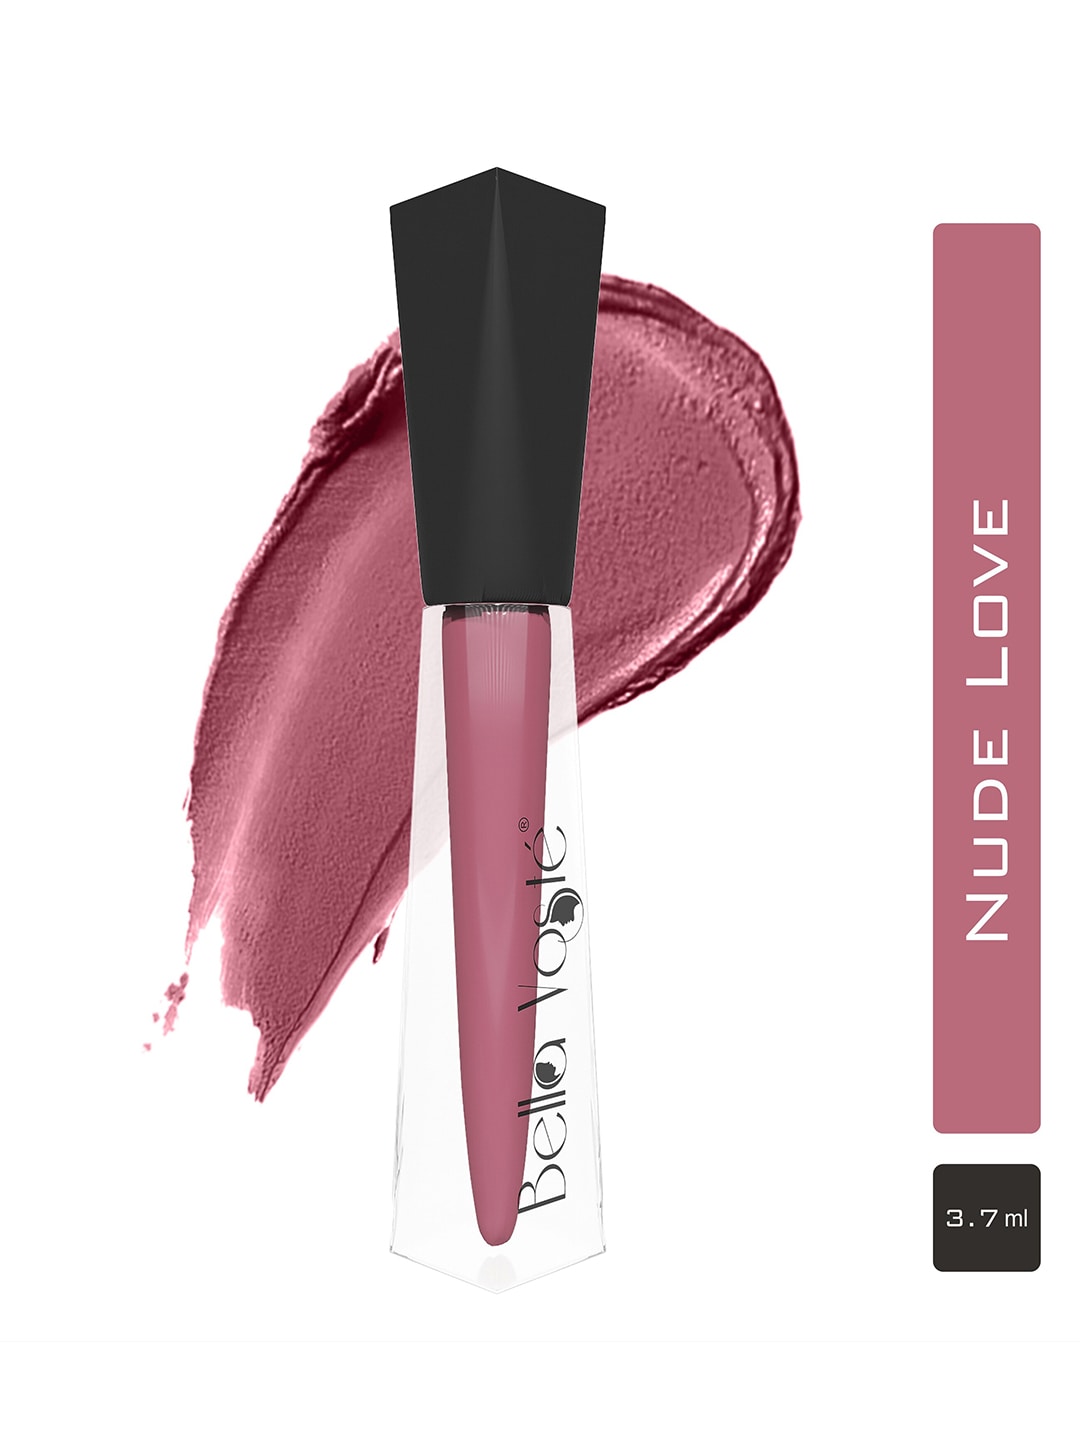 Bella Voste Ulti-Matte Liquid Lipstick - Nude Love 01 Price in India